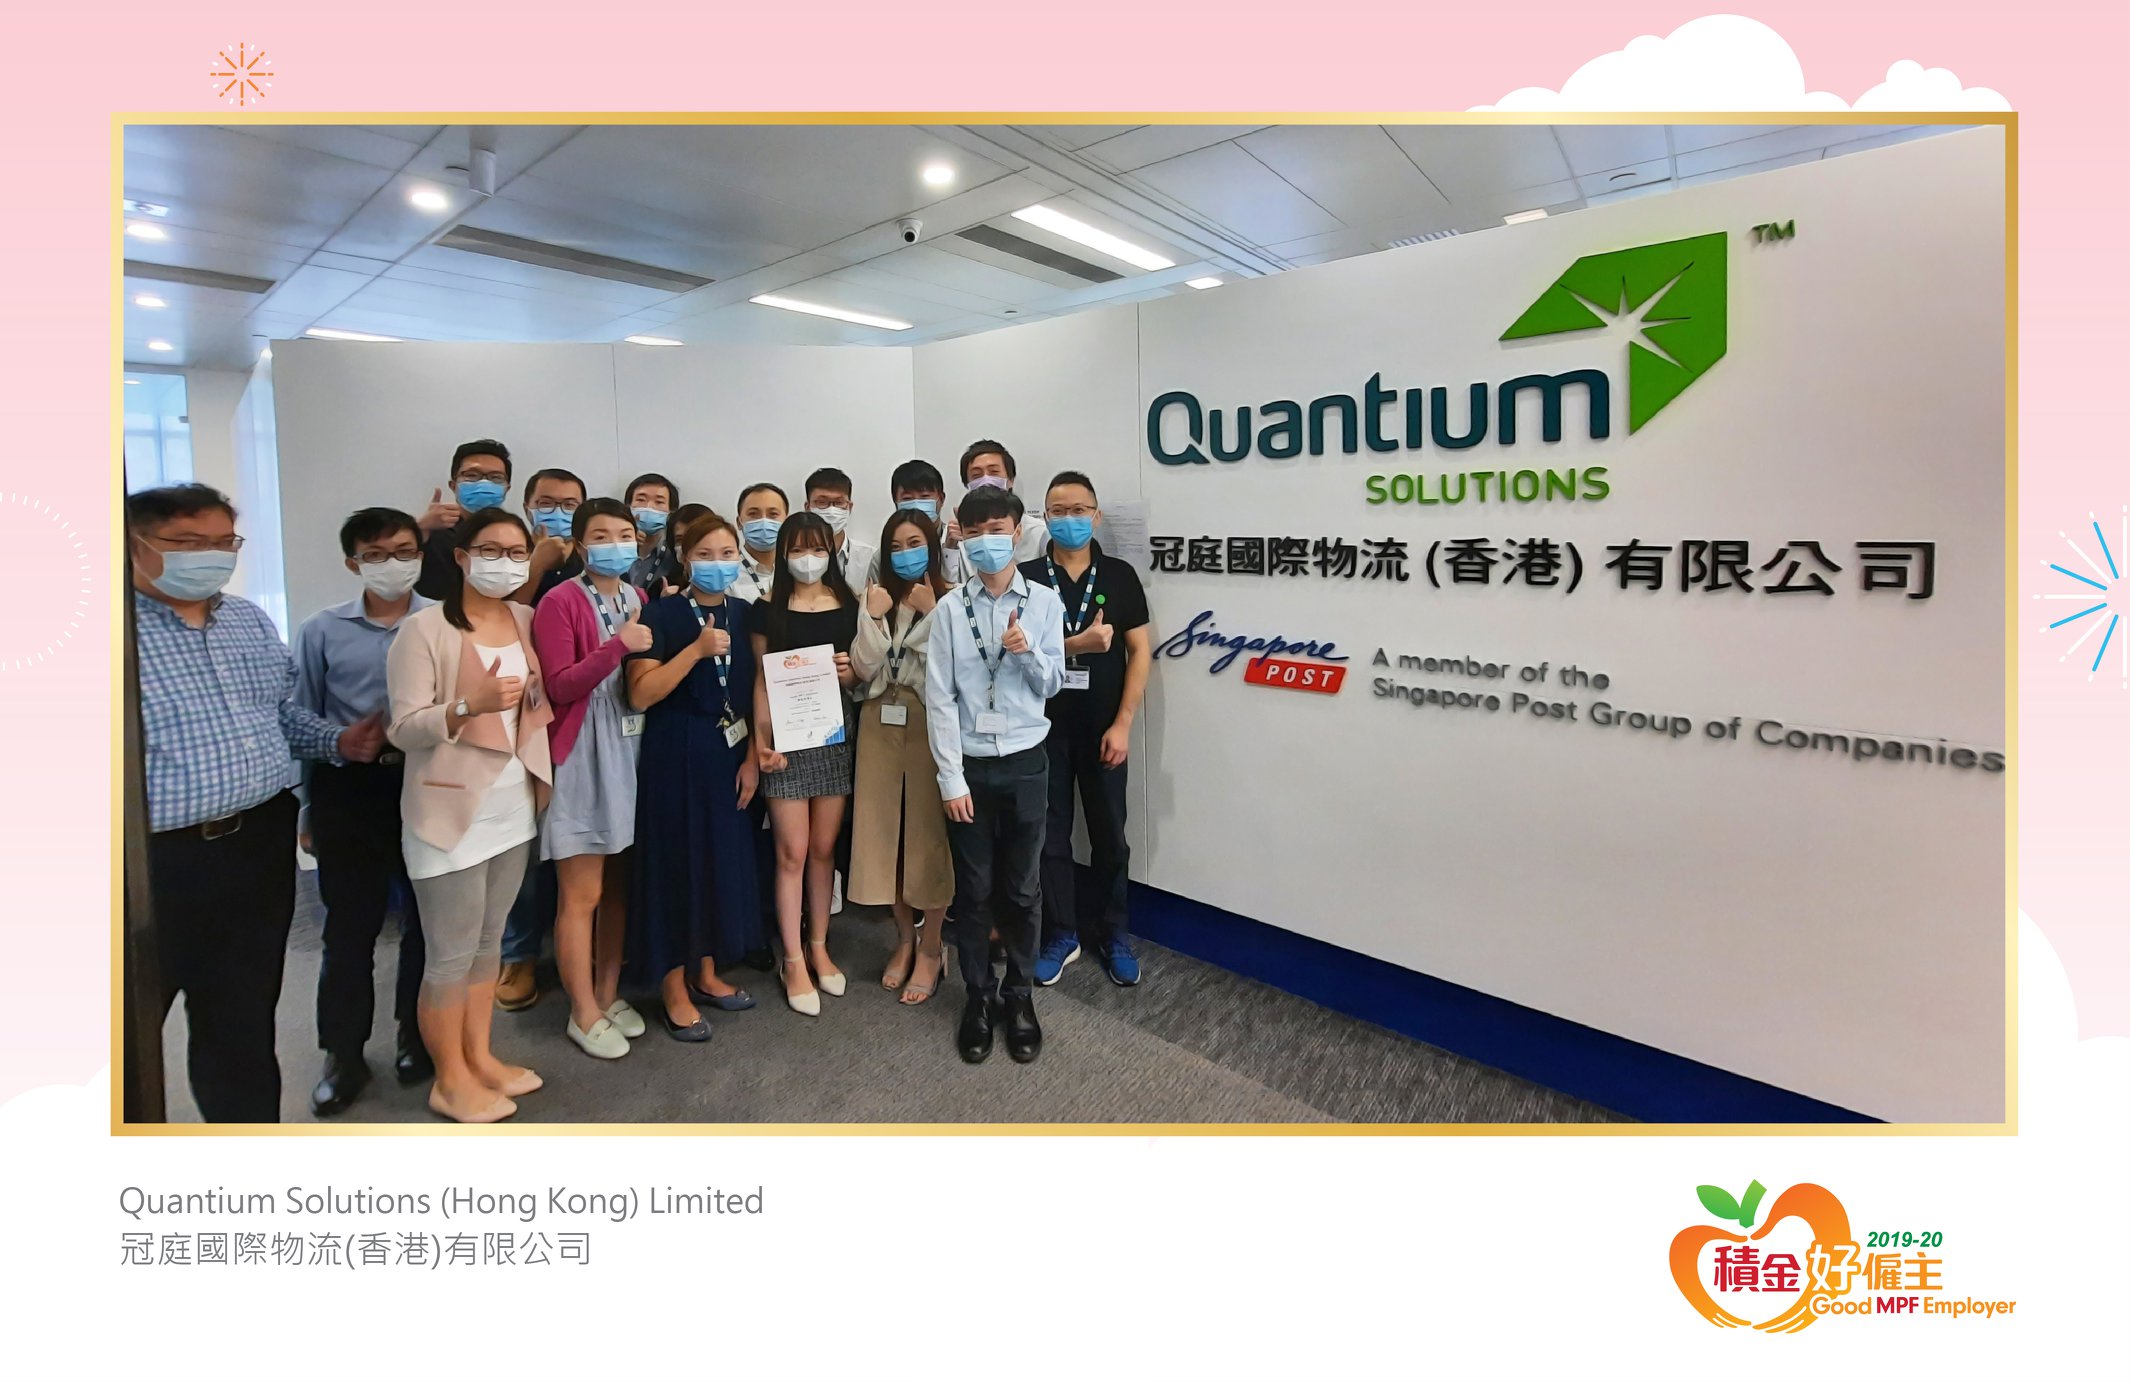 Quantium Solutions (Hong Kong) Limited 冠庭國際物流(香港)有限公司